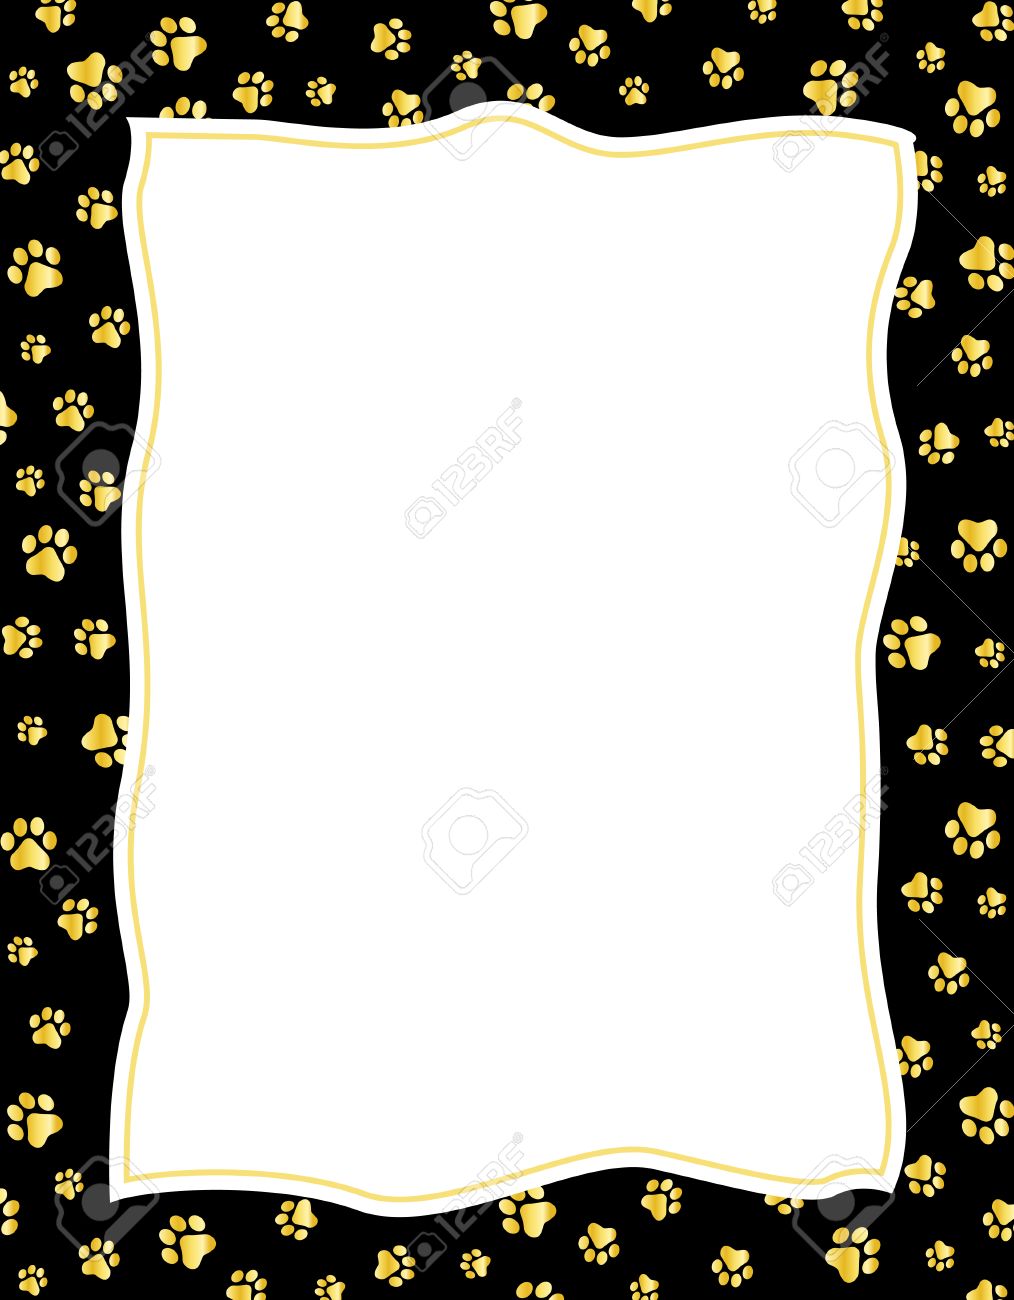 Gold Color Paw Prints On Black Background Border Frame